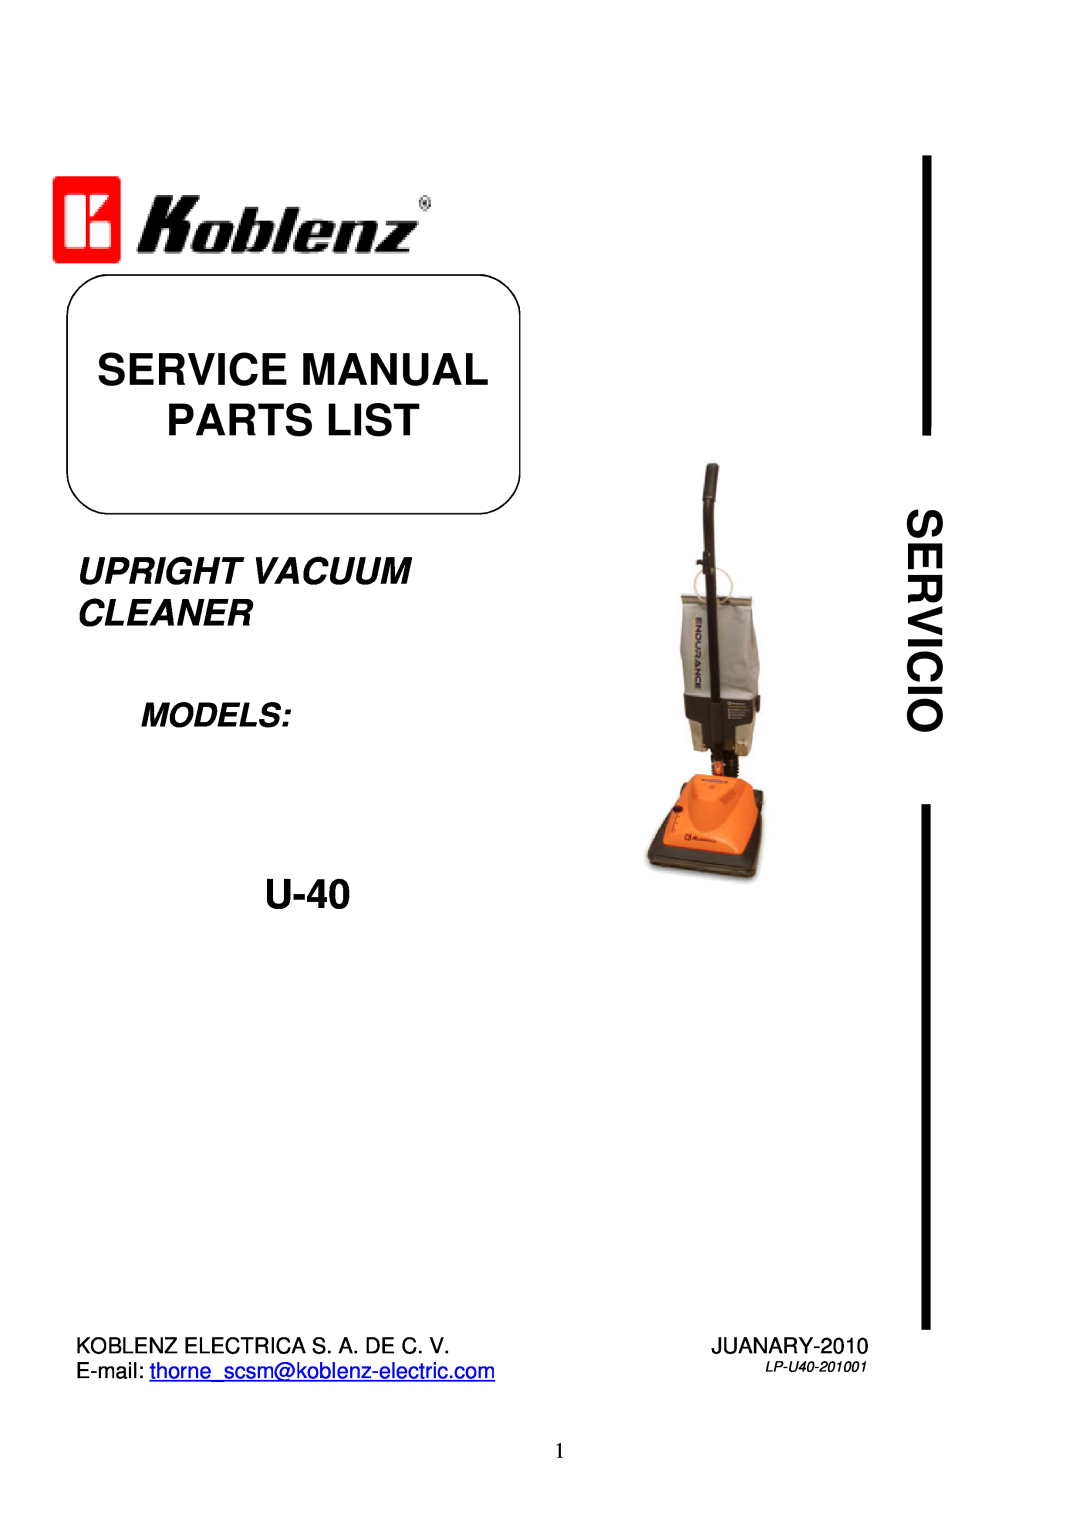 Koblenz/Thorne Electric U-40 service manual Servicio, Upright Vacuum Cleaner, Models, LP-U40-201001 